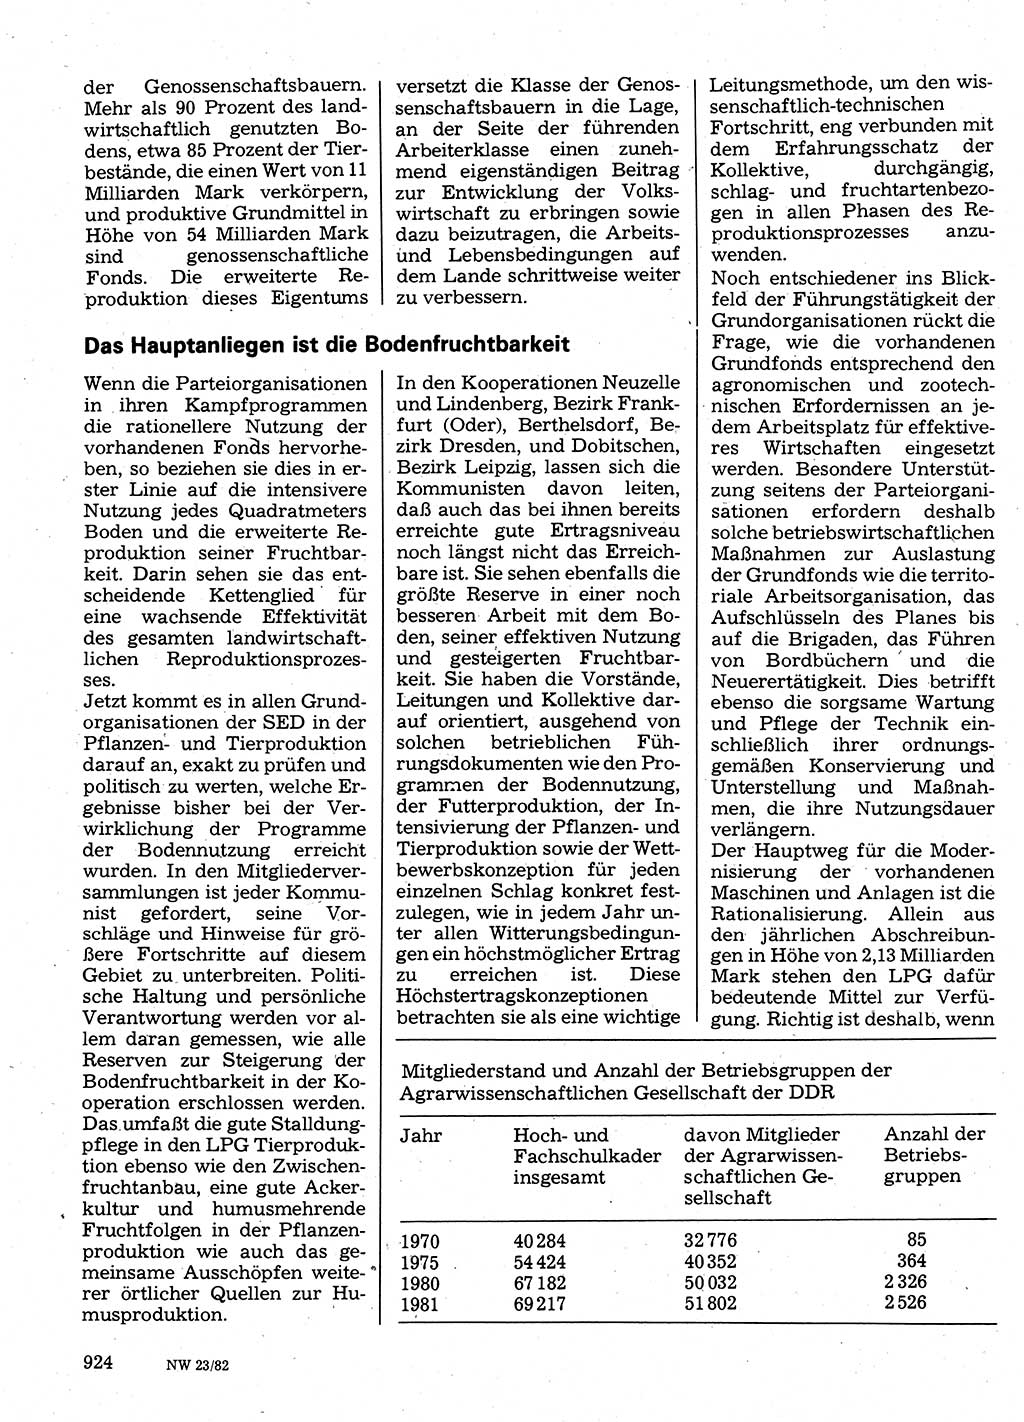 Neuer Weg (NW), Organ des Zentralkomitees (ZK) der SED (Sozialistische Einheitspartei Deutschlands) für Fragen des Parteilebens, 37. Jahrgang [Deutsche Demokratische Republik (DDR)] 1982, Seite 924 (NW ZK SED DDR 1982, S. 924)